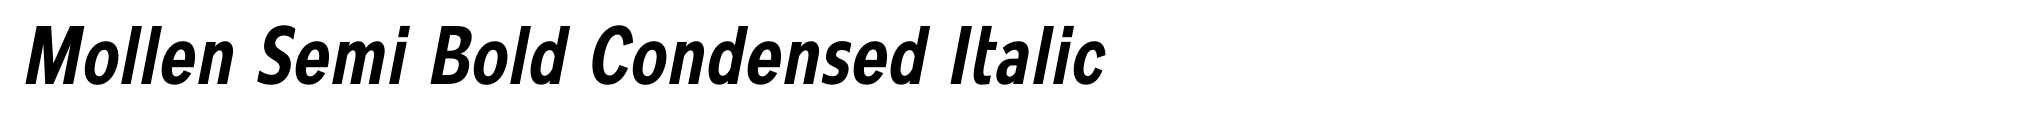 Mollen Semi Bold Condensed Italic image